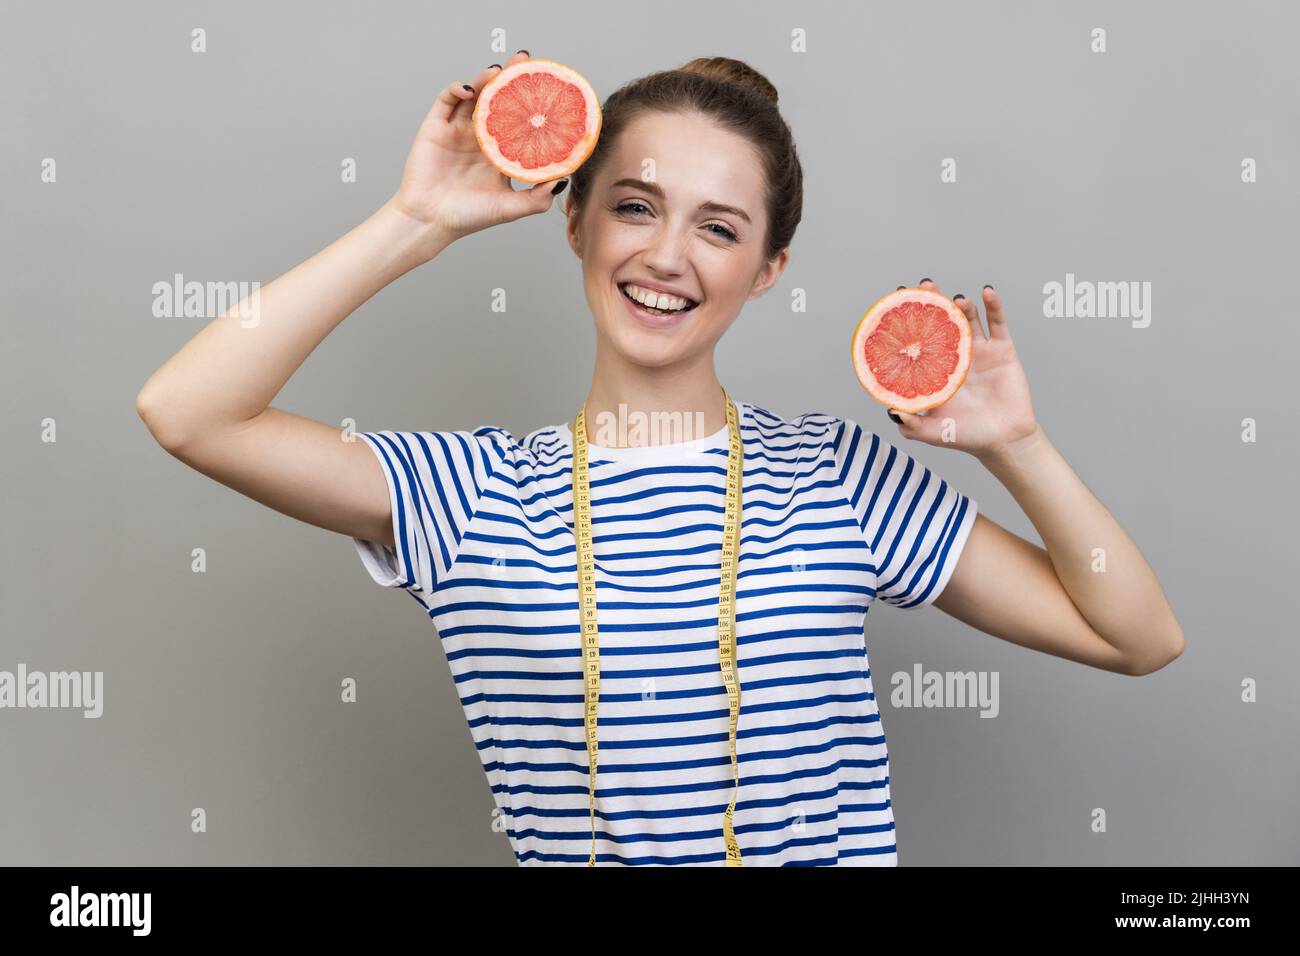 Porträt einer fröhlichen, optimistischen Frau, die gestreiftes T-Shirt trägt und mit Grapefruitscheiben und Maßband steht, lächelnd auf die Kamera. Innenaufnahme auf grauem Hintergrund. Stockfoto